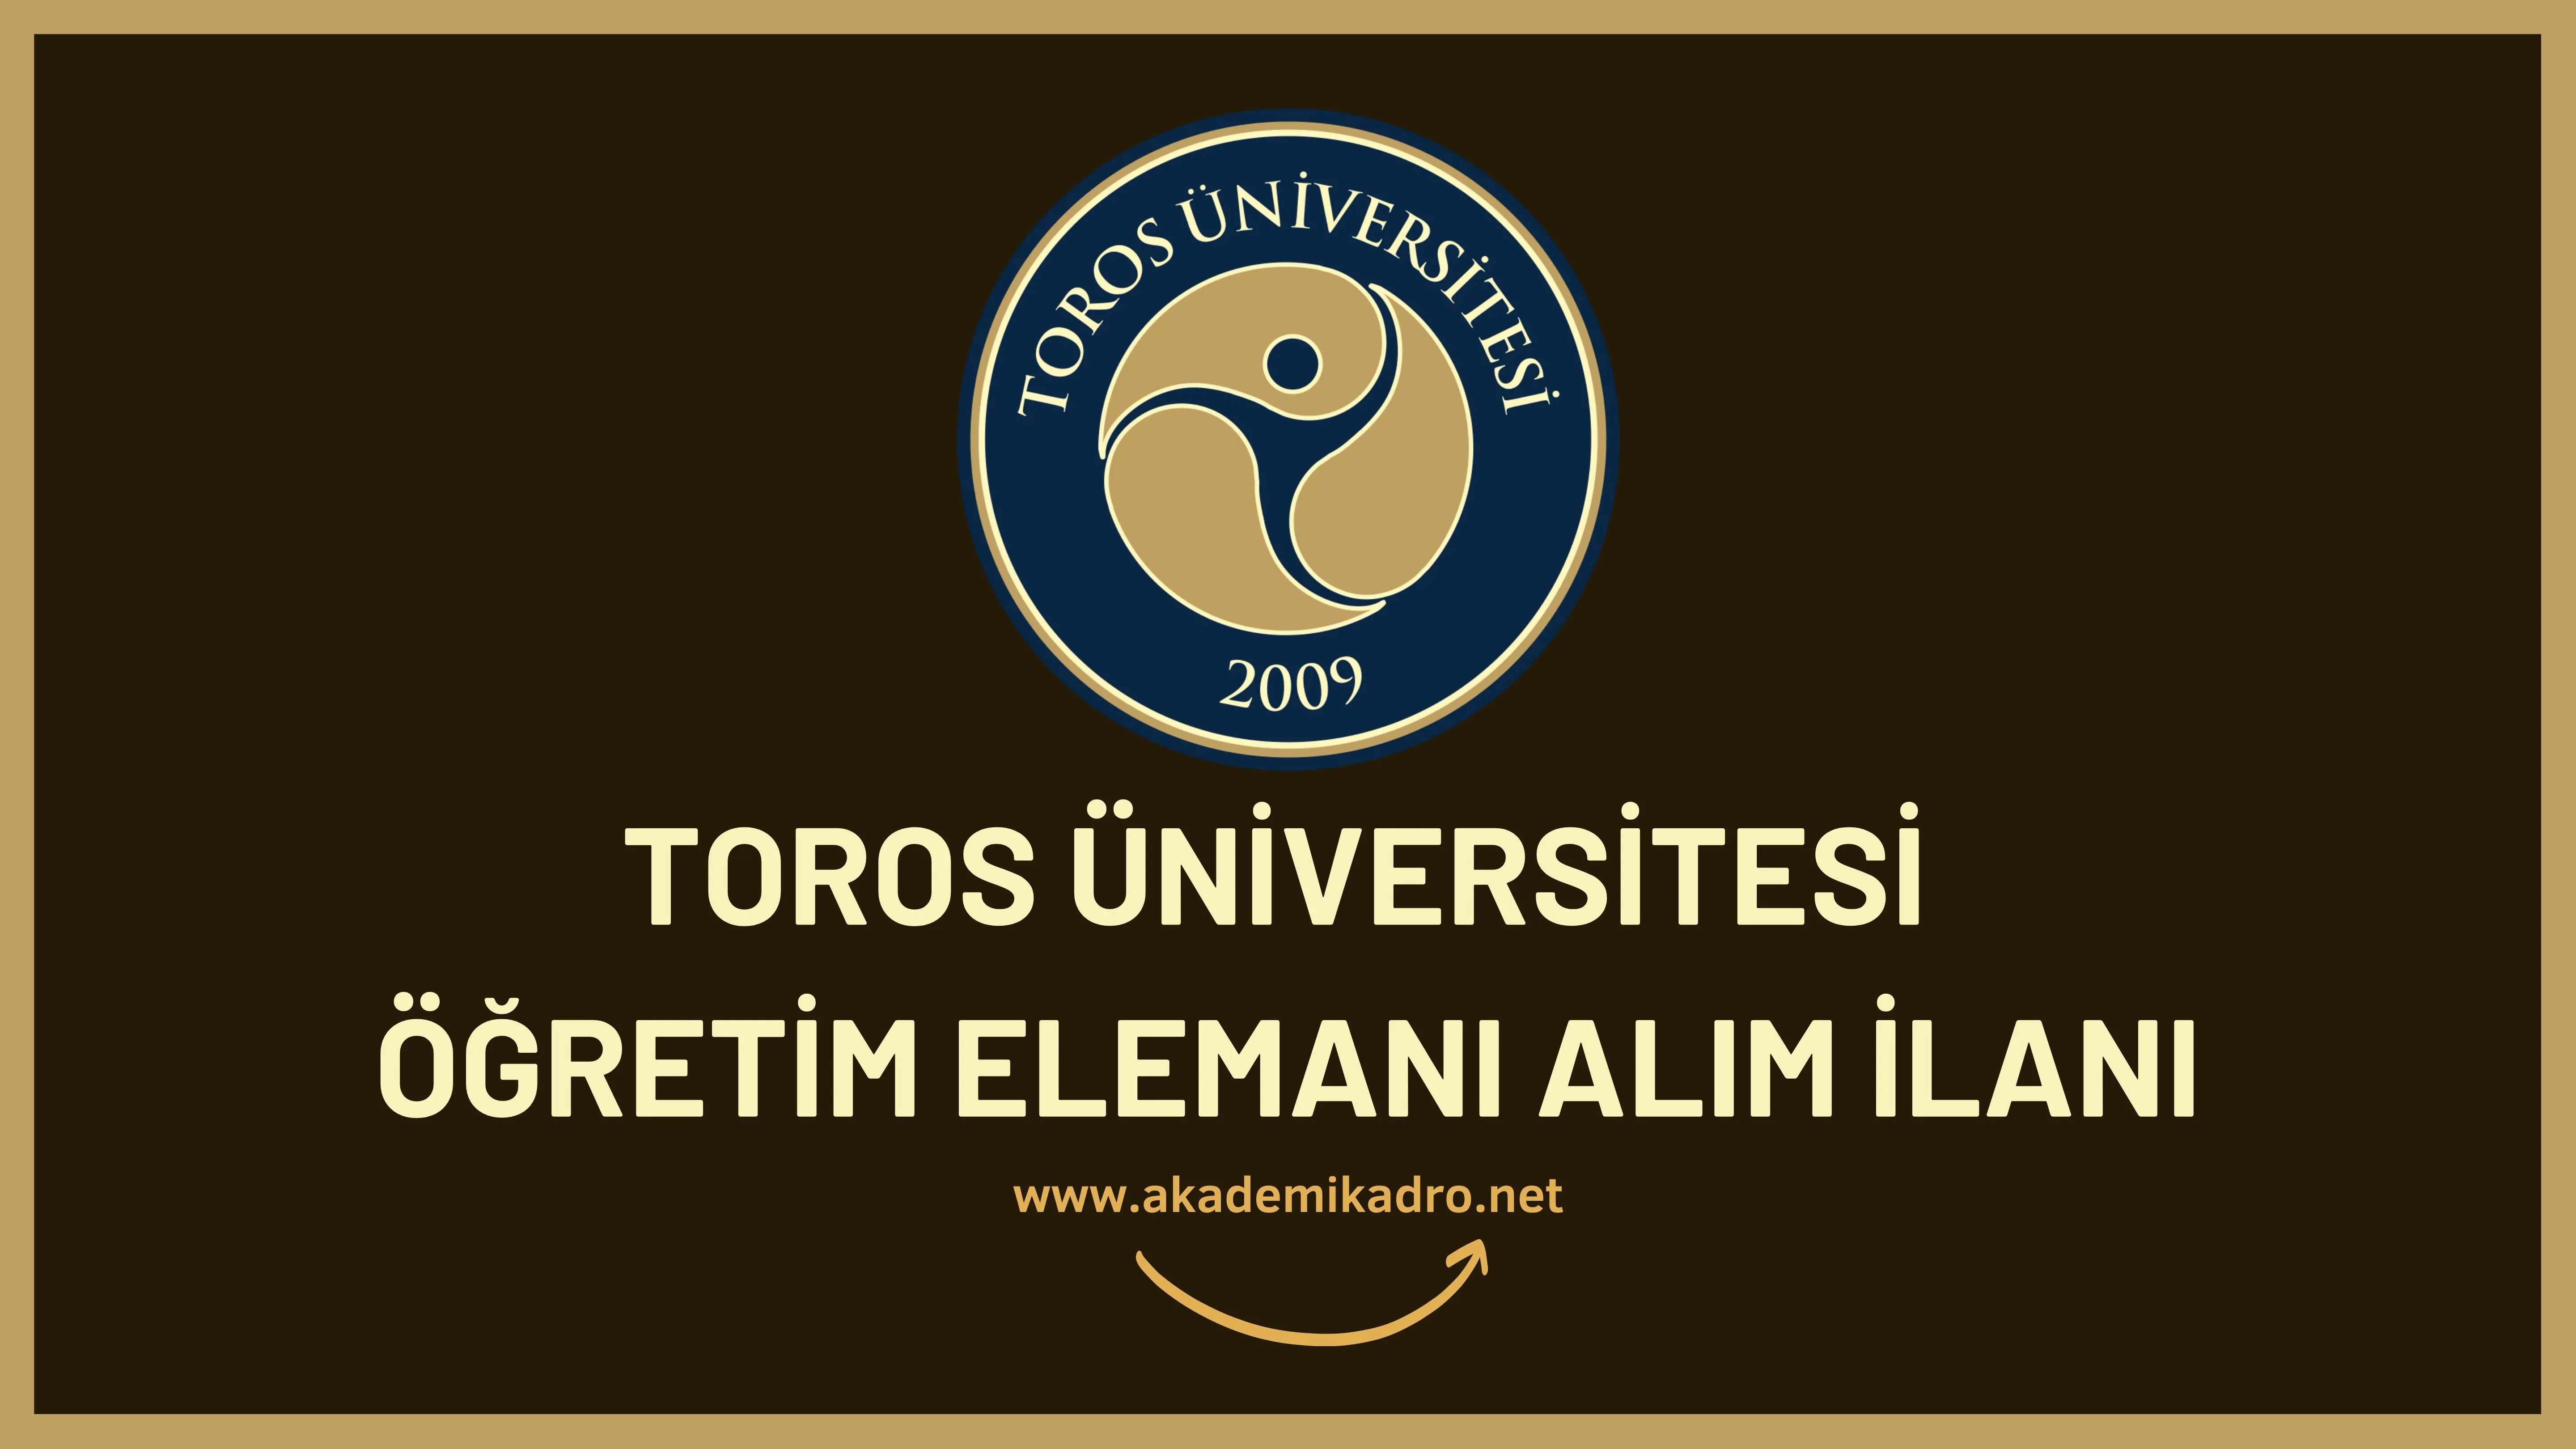 Toros Üniversitesi Araştırma Görevlisi alacaktır.  Son başvuru tarihi 24 Ekim 2022.